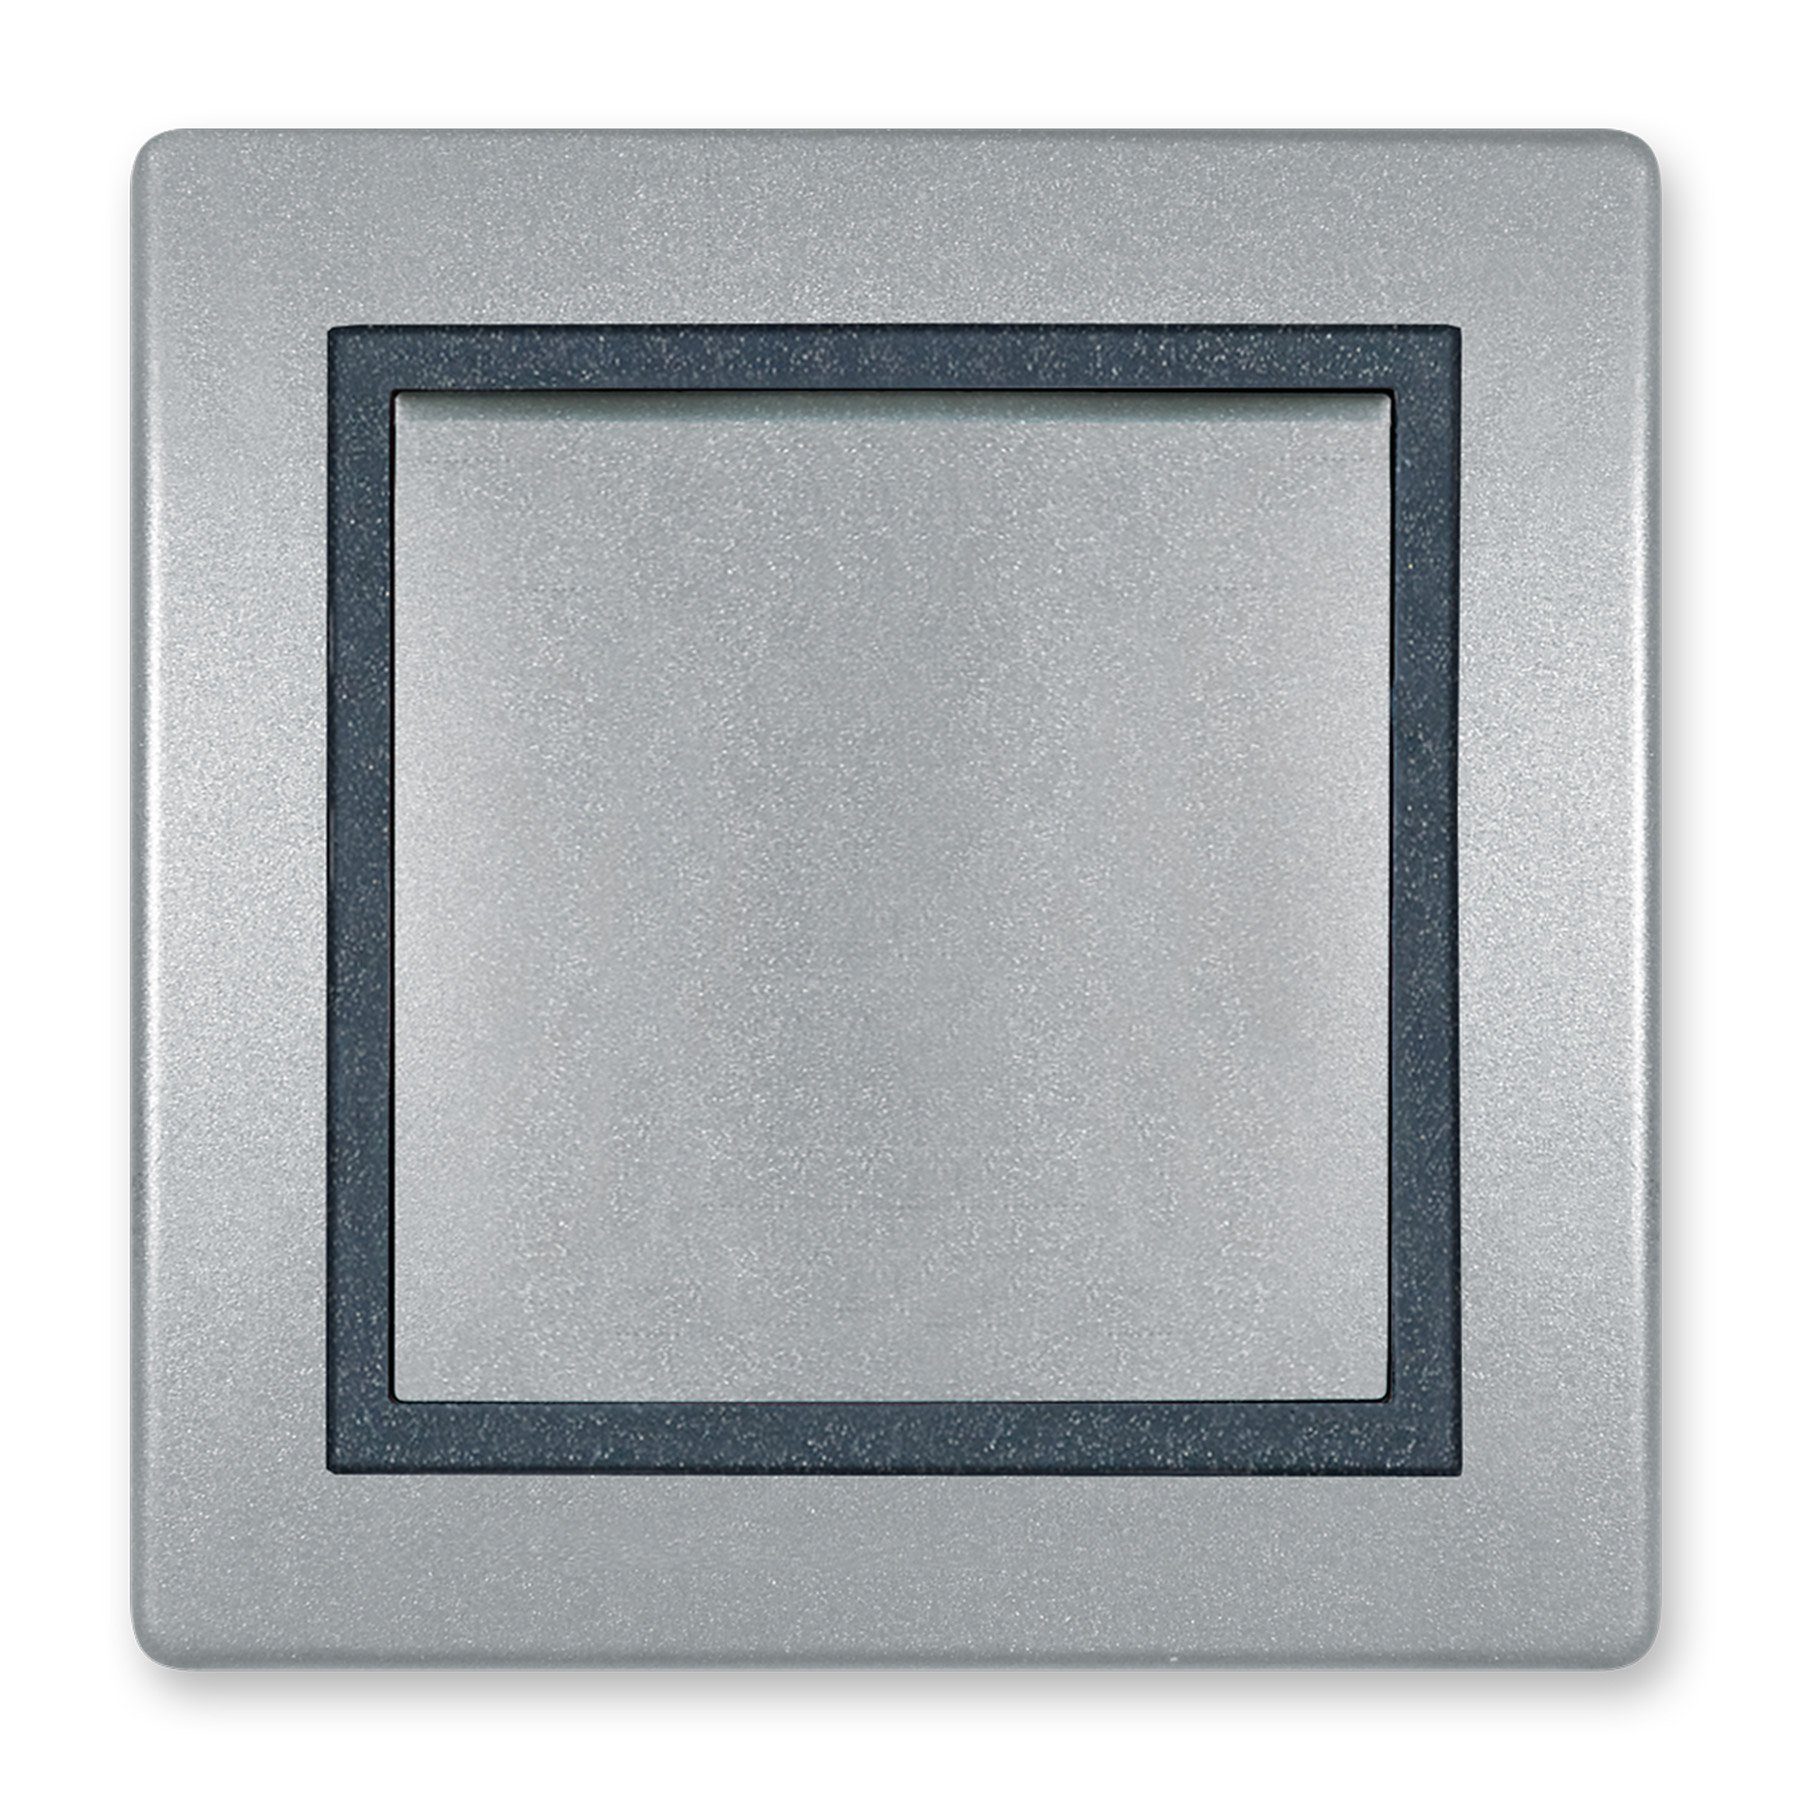 Aling Conel Lichtschalter Prestige Line Ein/Aus Silber, VDE-zertifiziert Schalter